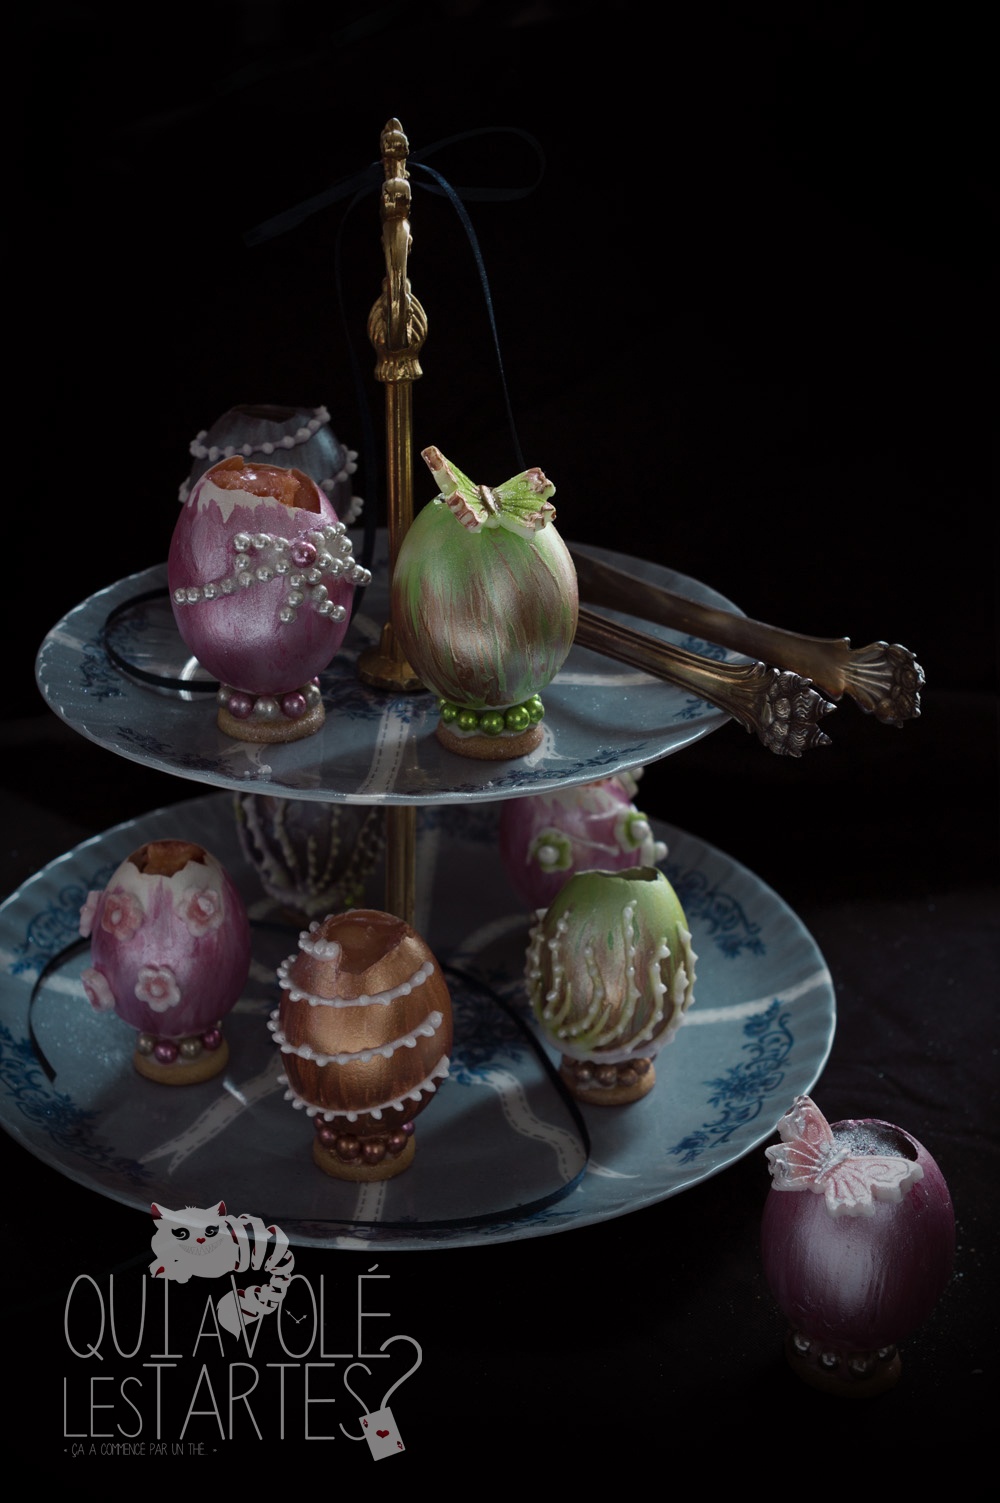 Oeufs façon Fabergé 3 - Studio 2 création - Qui a volé les tartes